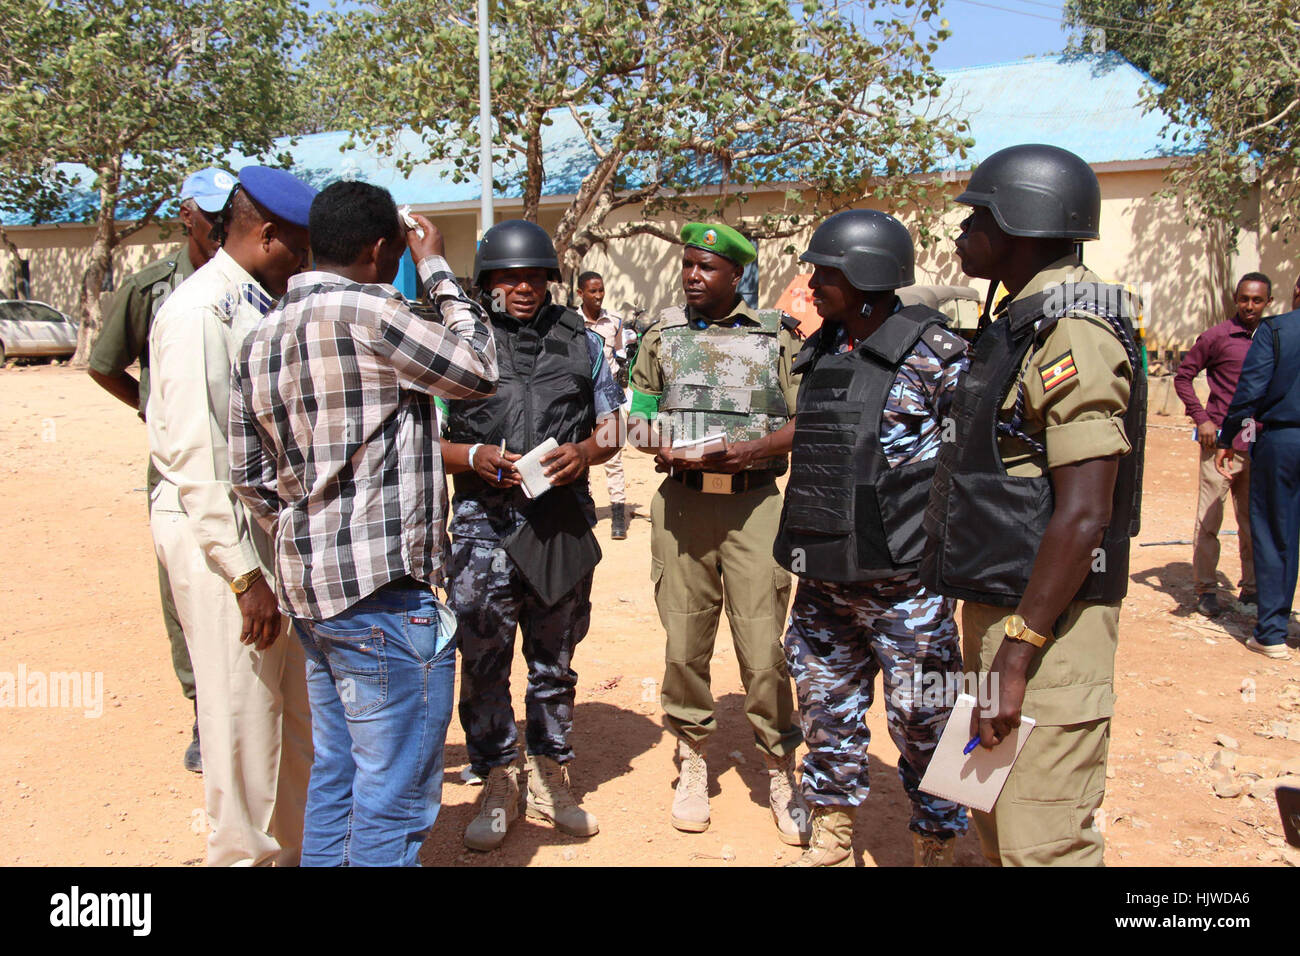 L'AMISOM formato unità di polizia (FPU) e le forze di polizia somale pattugliamenti congiunti intorno a Baidoa, Somalia, il 12 dicembre 2012. I pattugliamenti comuni sono destinati a mettere un coperchio stretto sulla sicurezza a Baidoa. Baidoa ha assistito senza incidente superiore e inferiore alle elezioni della casa, grazie agli sforzi collettivi di AMISOM la polizia insieme con il somalo di forze di polizia. Foto Stock